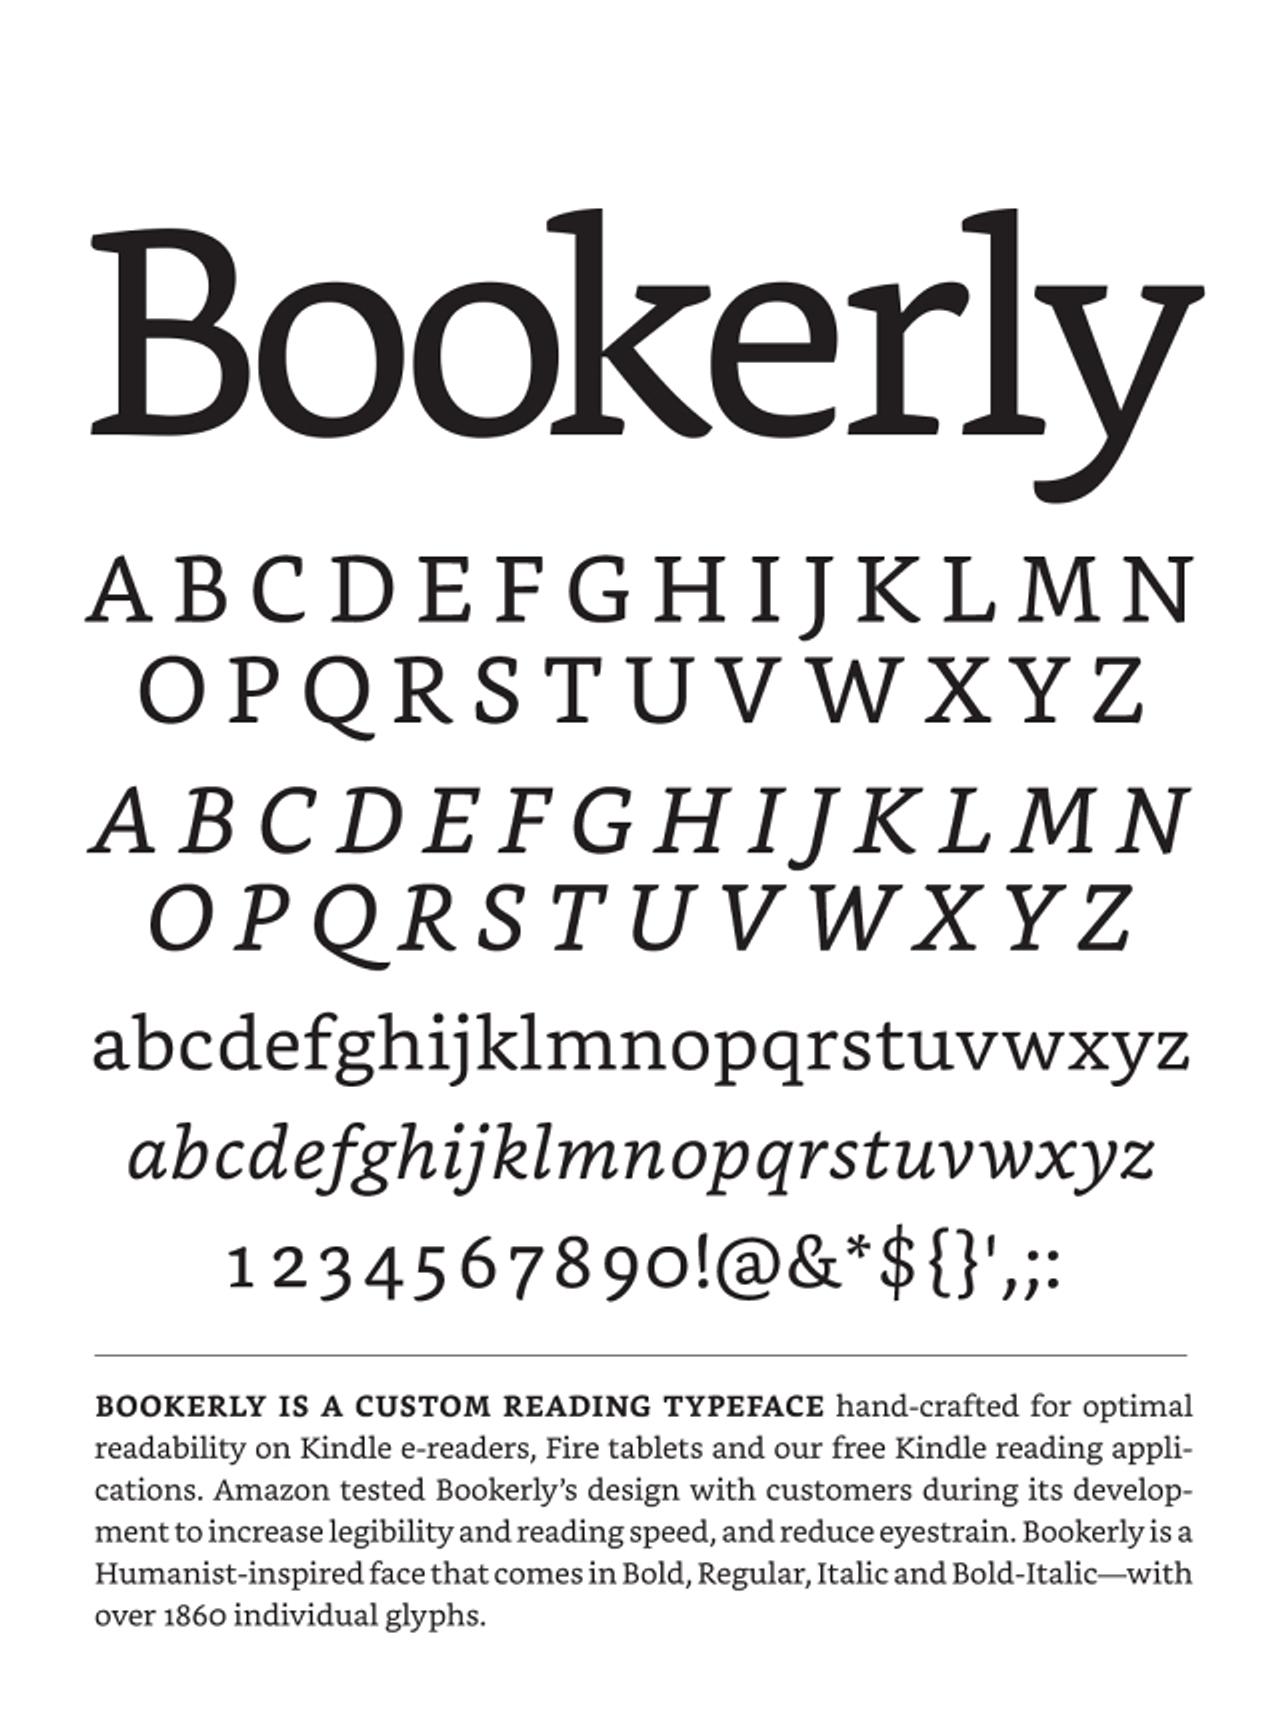 Kindleのためだけに作られたAmazonの新しいタイポグラフィ｢Bookerly｣